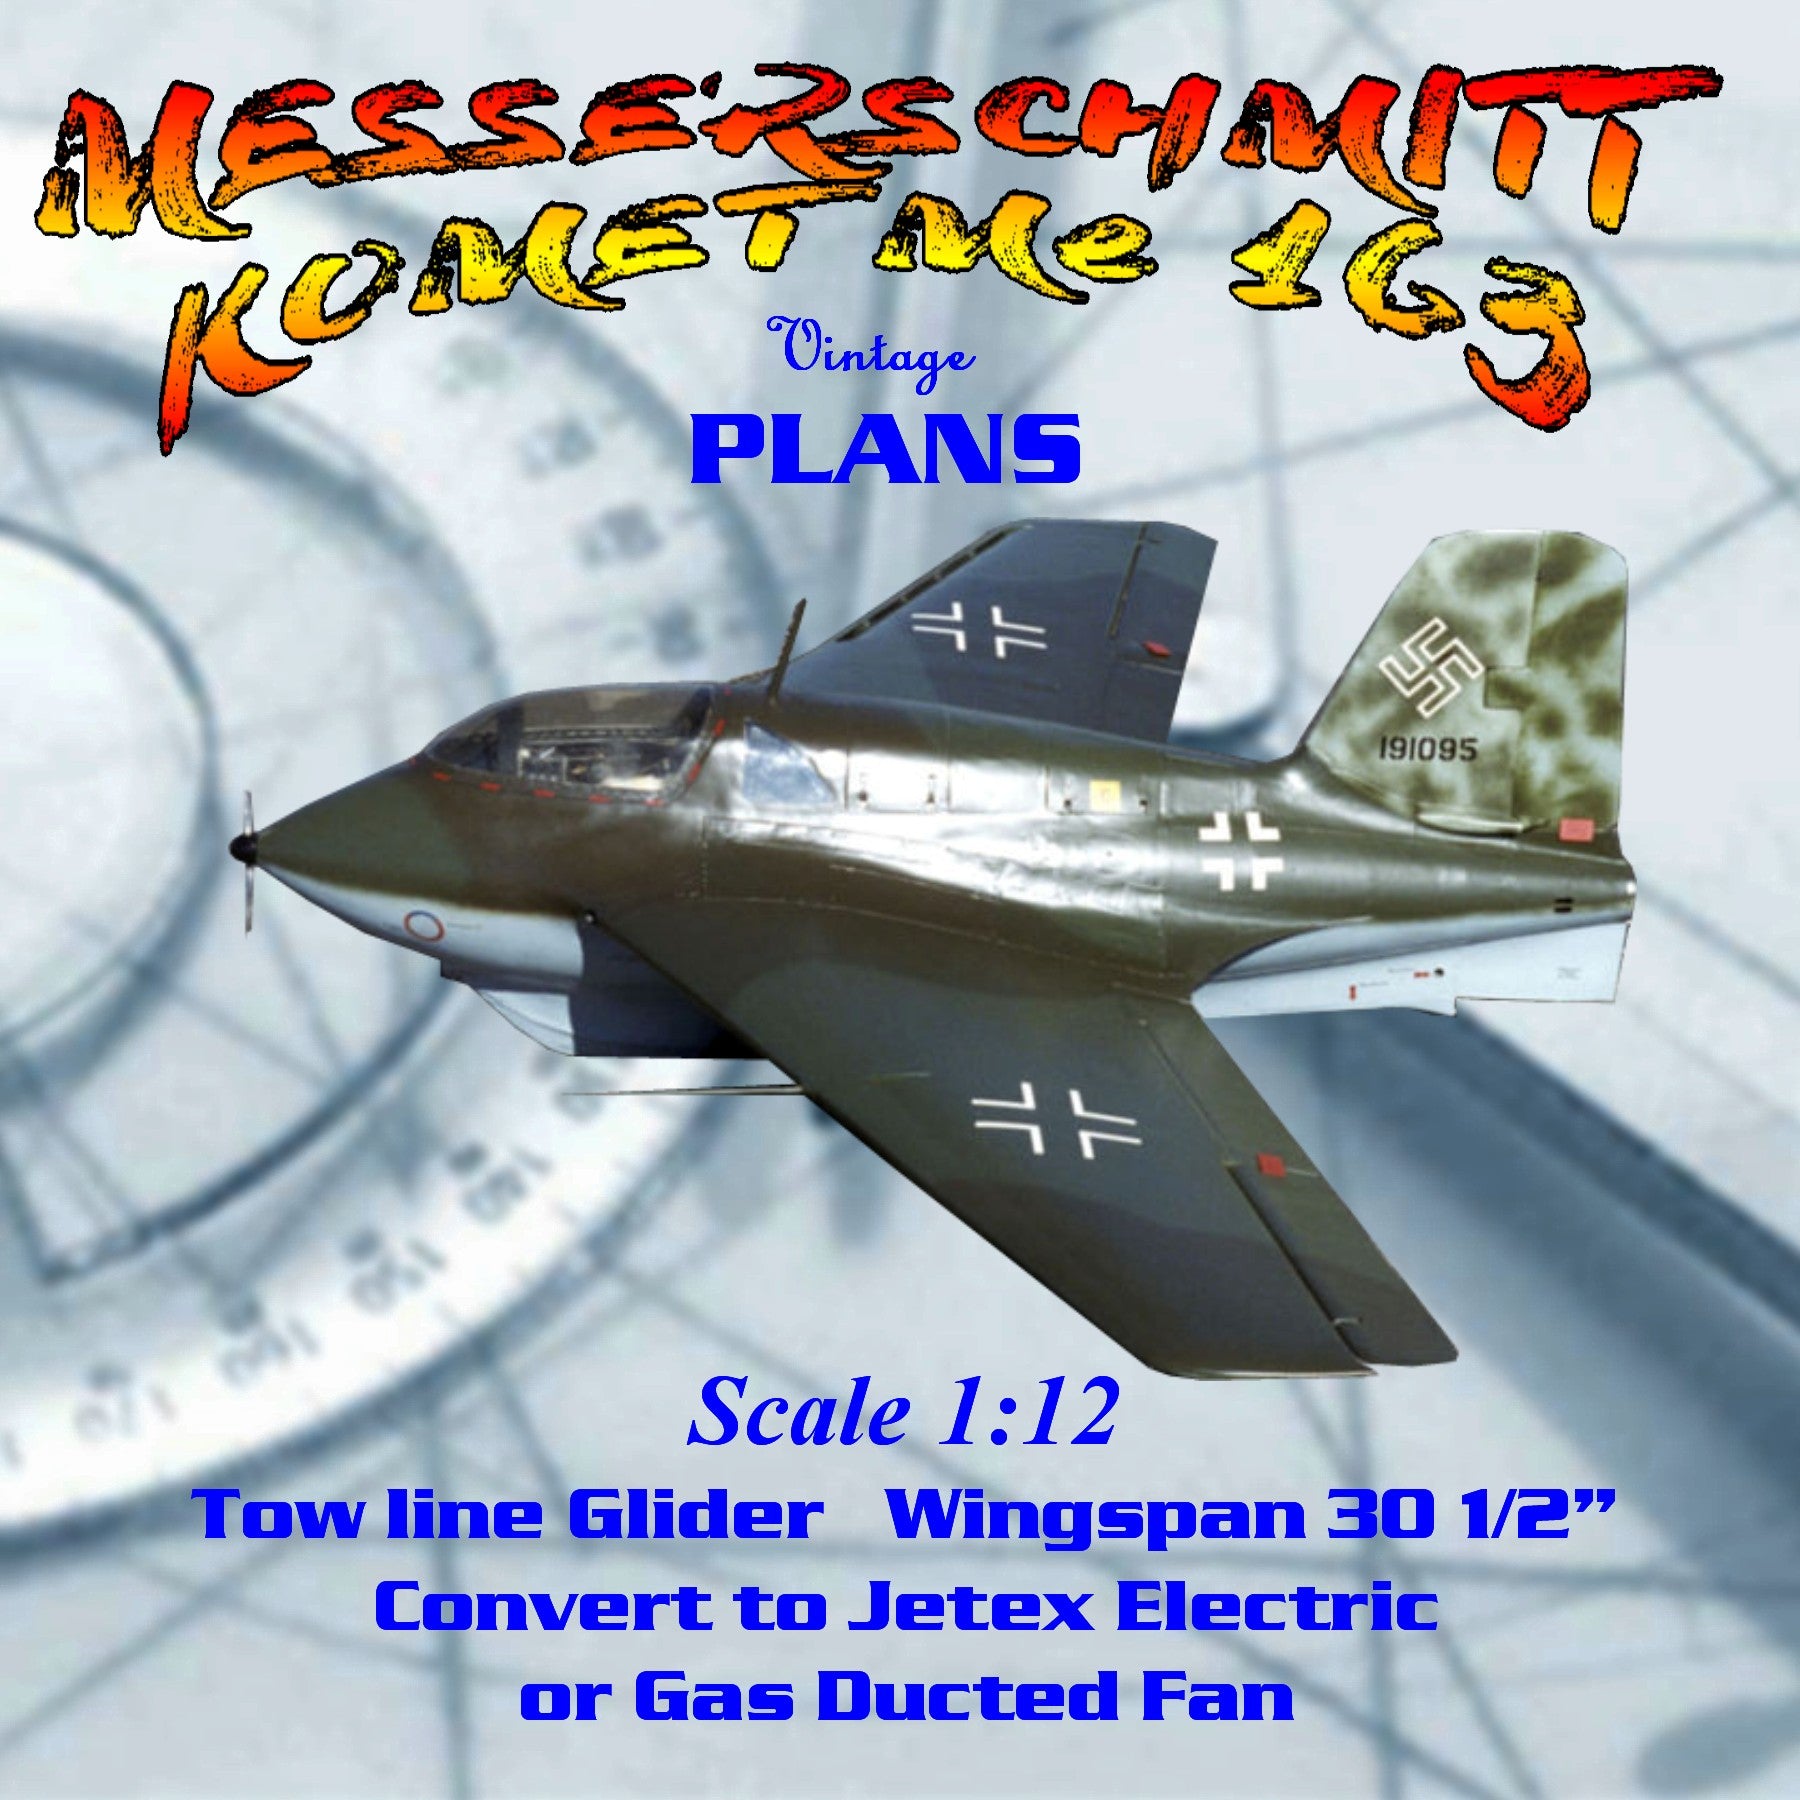 Full Size Printed Scale 1 12 Messerschmitt Komet Me 163 Glider Or Conv Vintage Model Plans